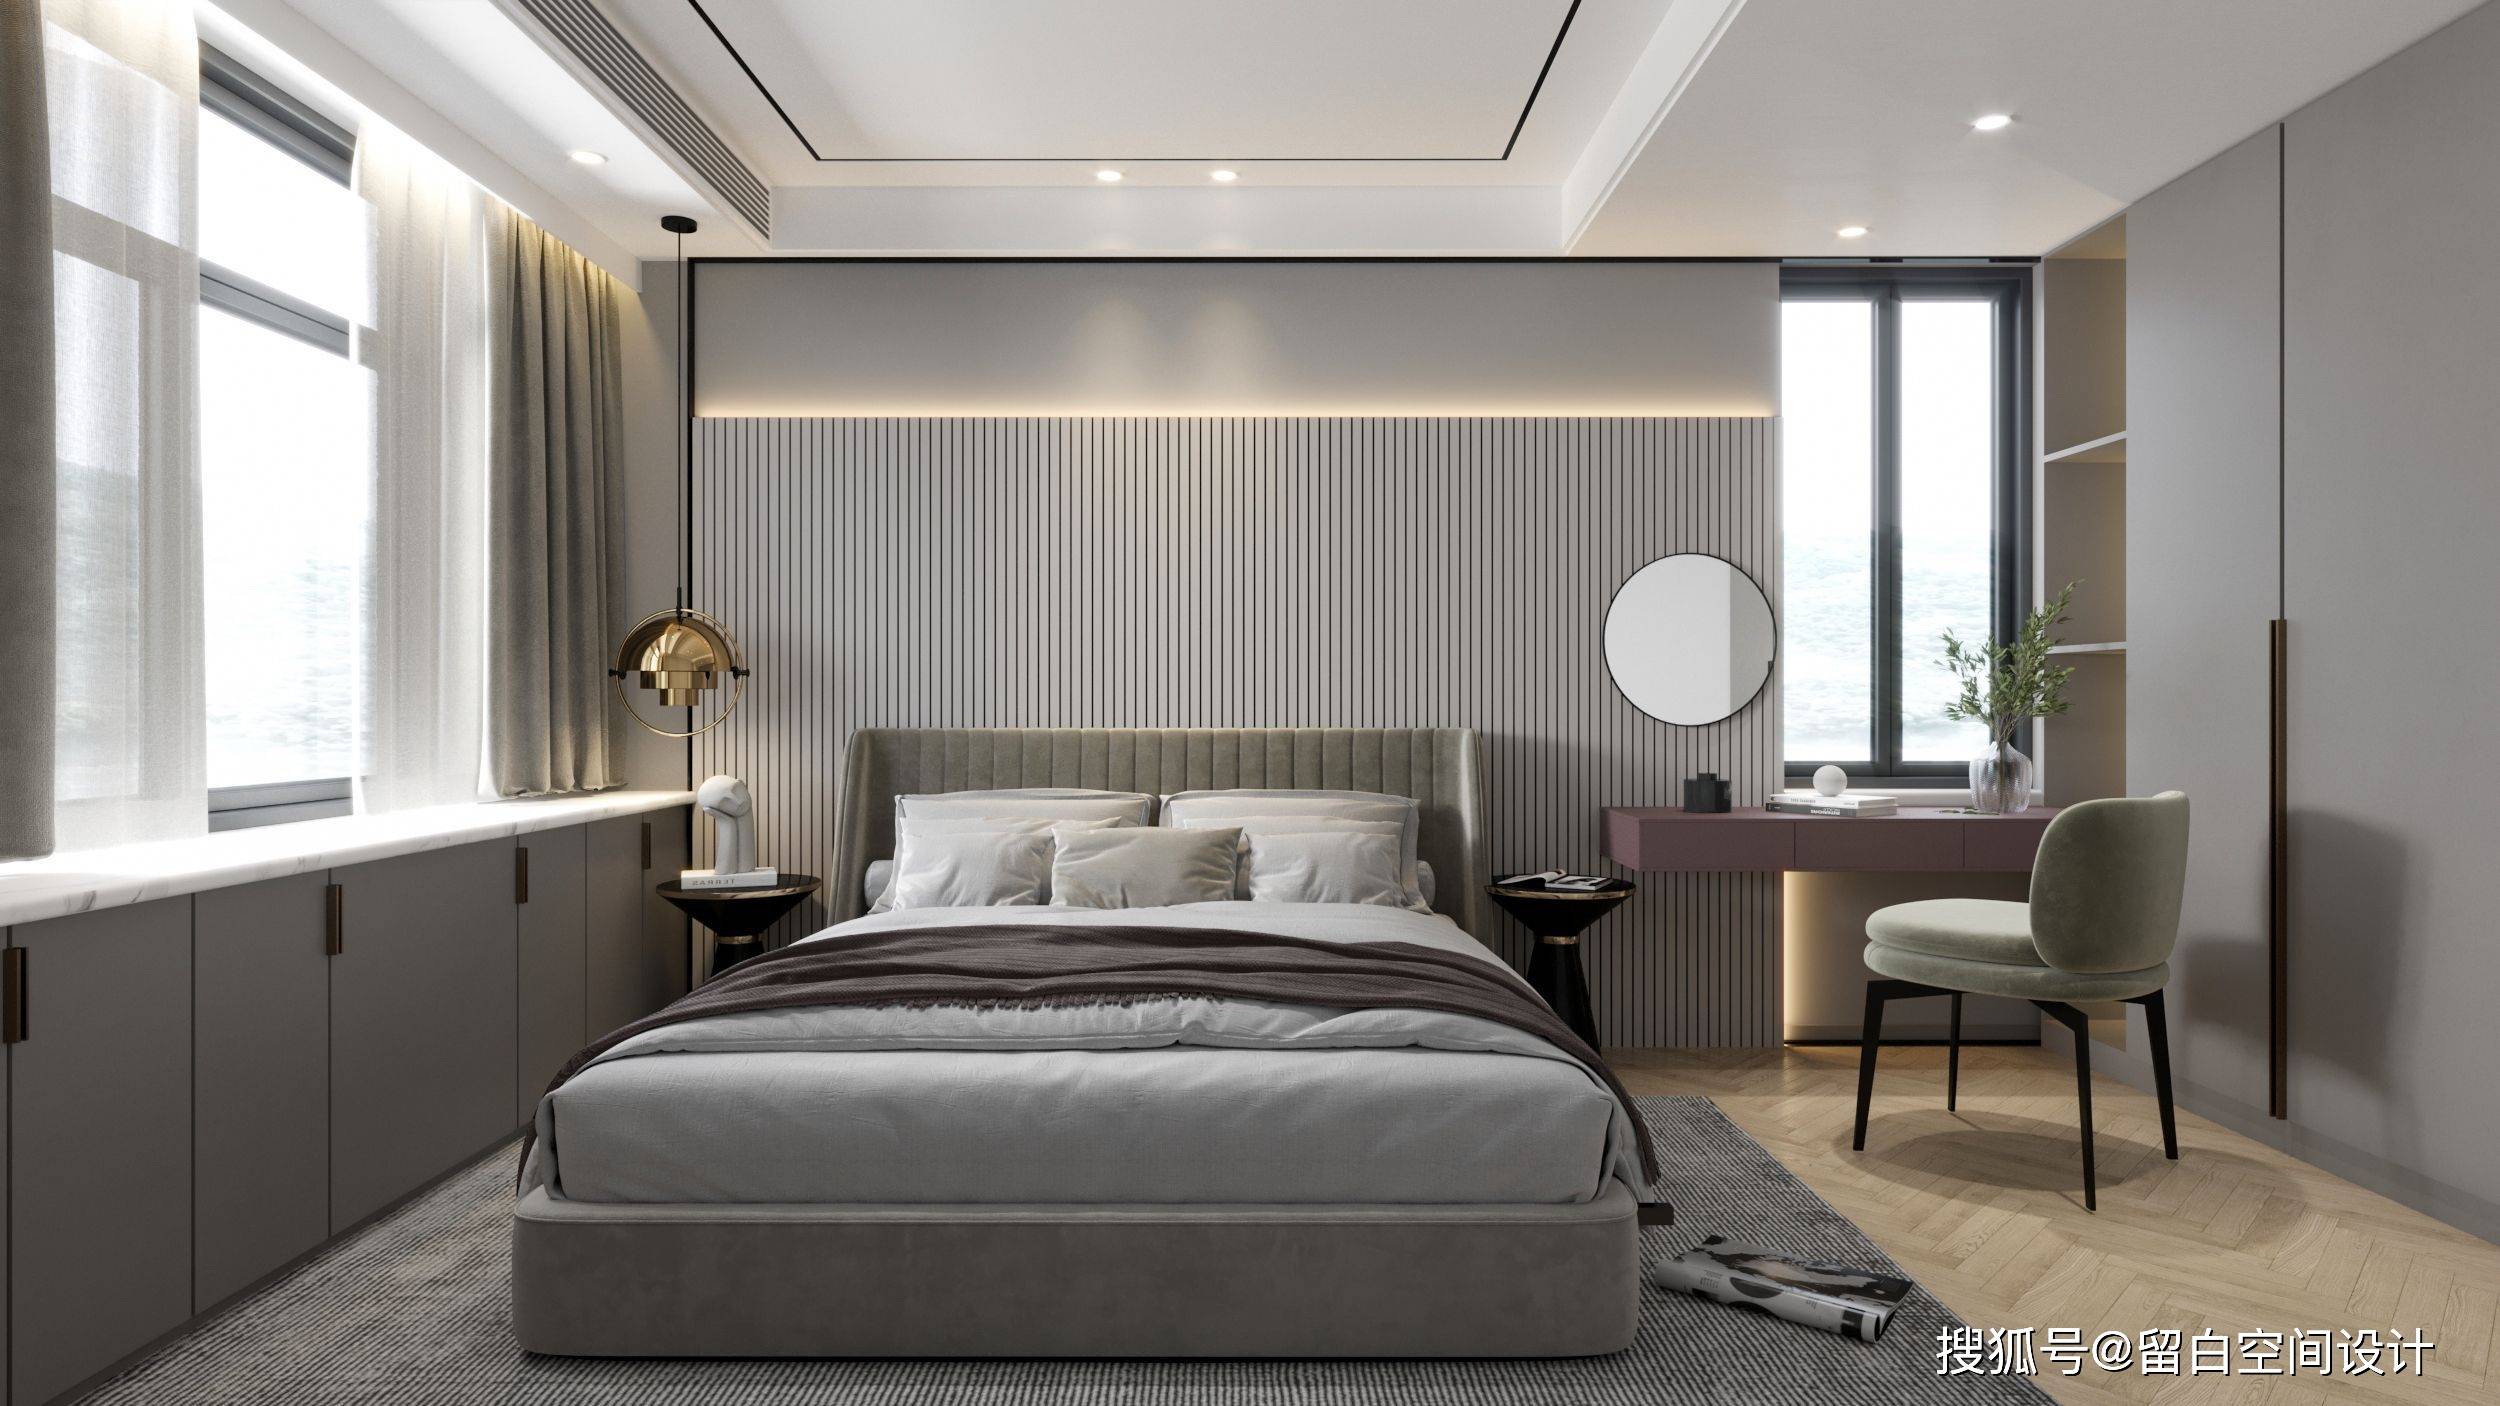 从室内设计角度来讲,床的面积大小会影响整个卧室的装修呈现效果及